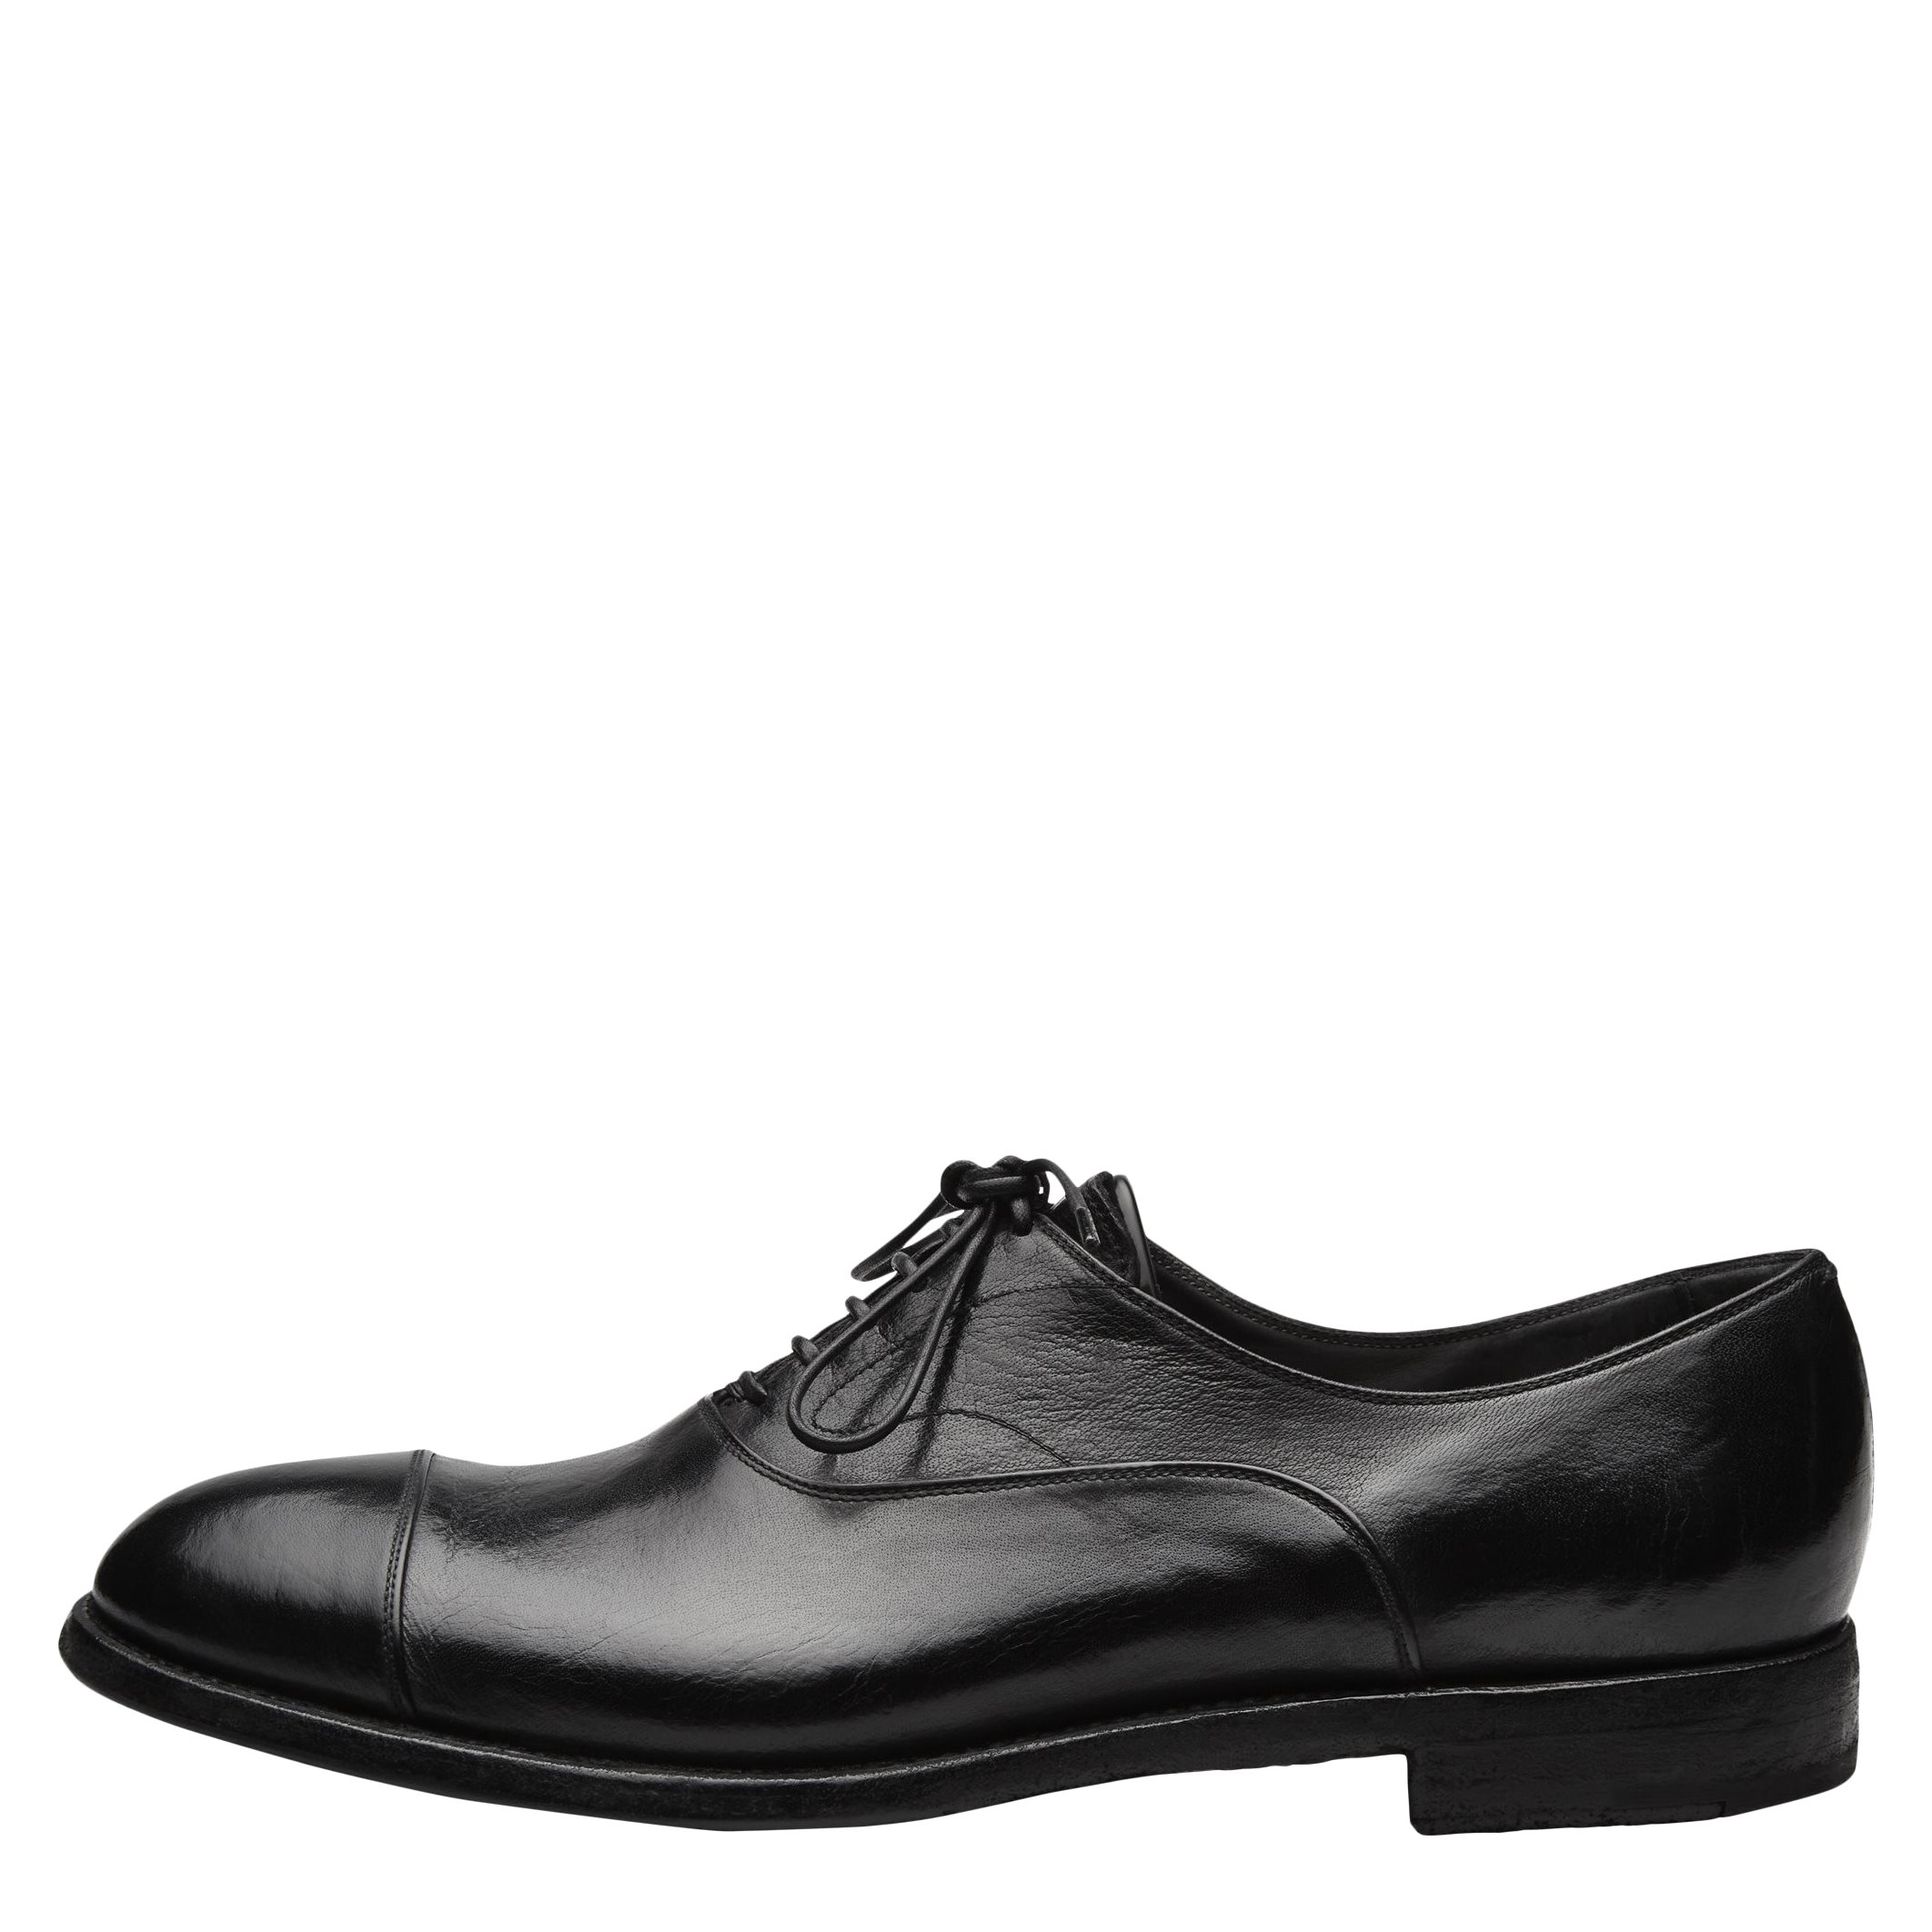 ELIAS 15012 IGNIS BLACK Shoes - Shoes - Black